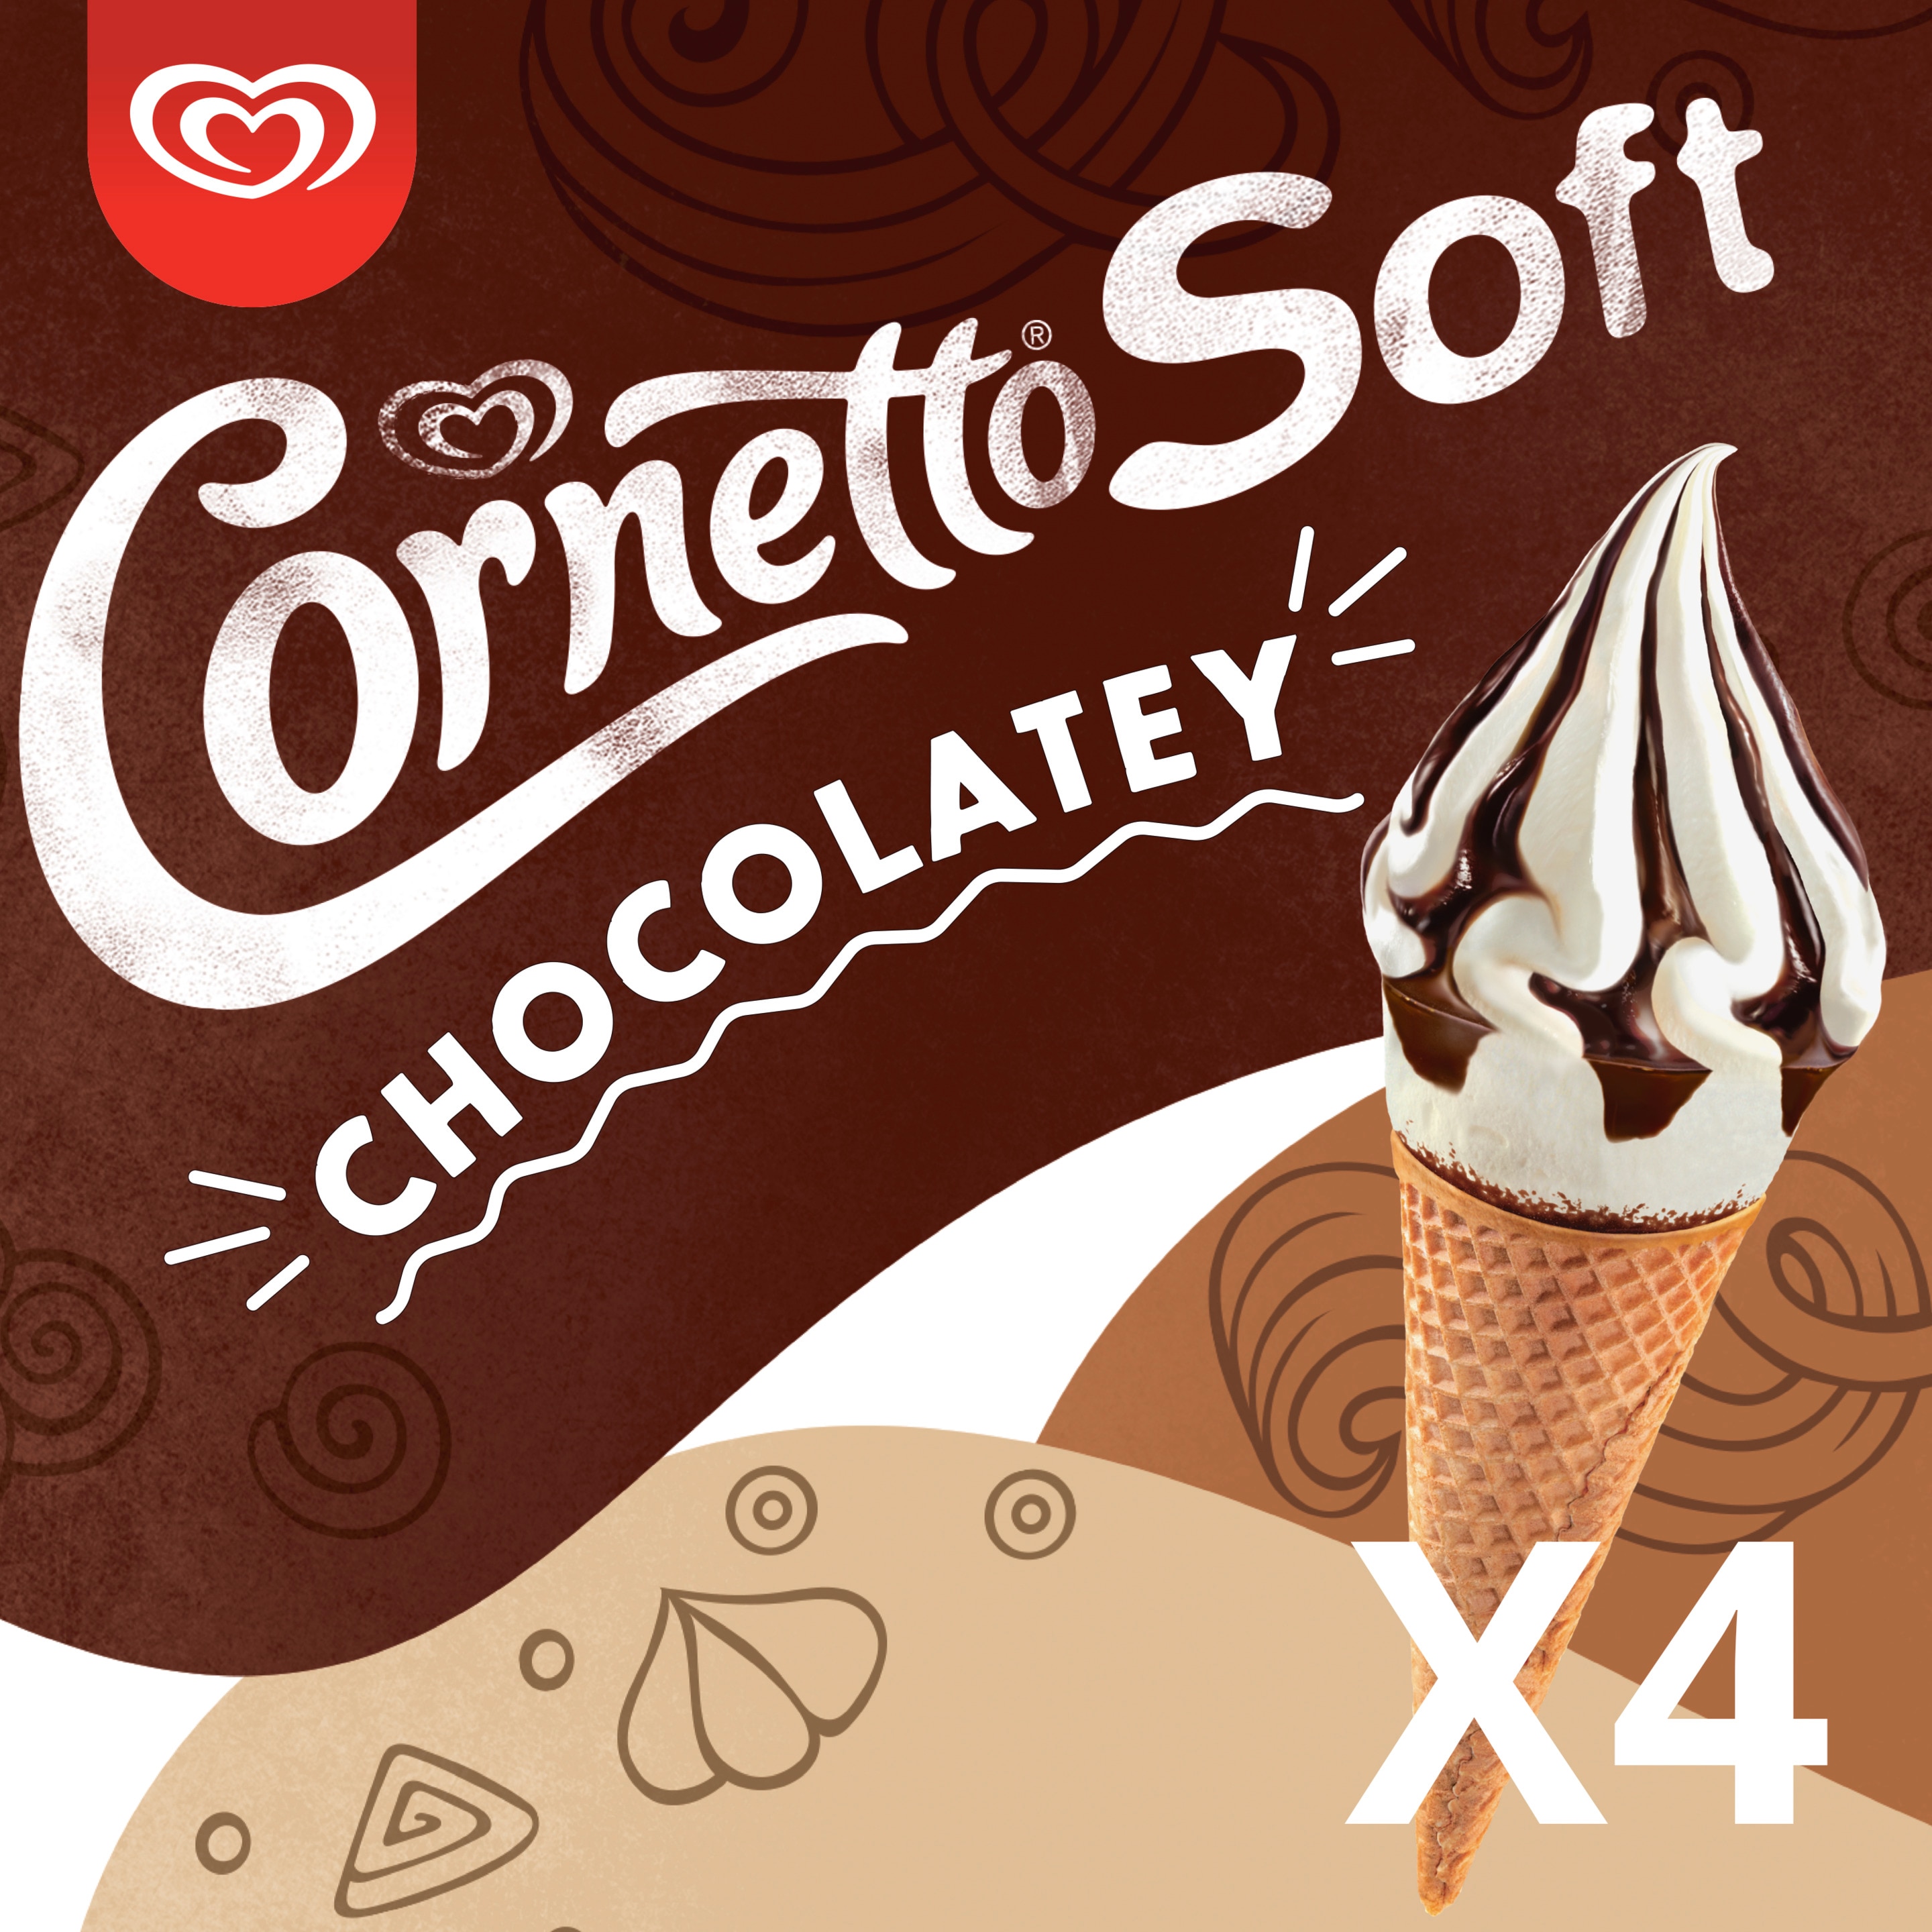 Cornetto Soft Chocolatey 4 x 140 ml - Langnese Deutschland